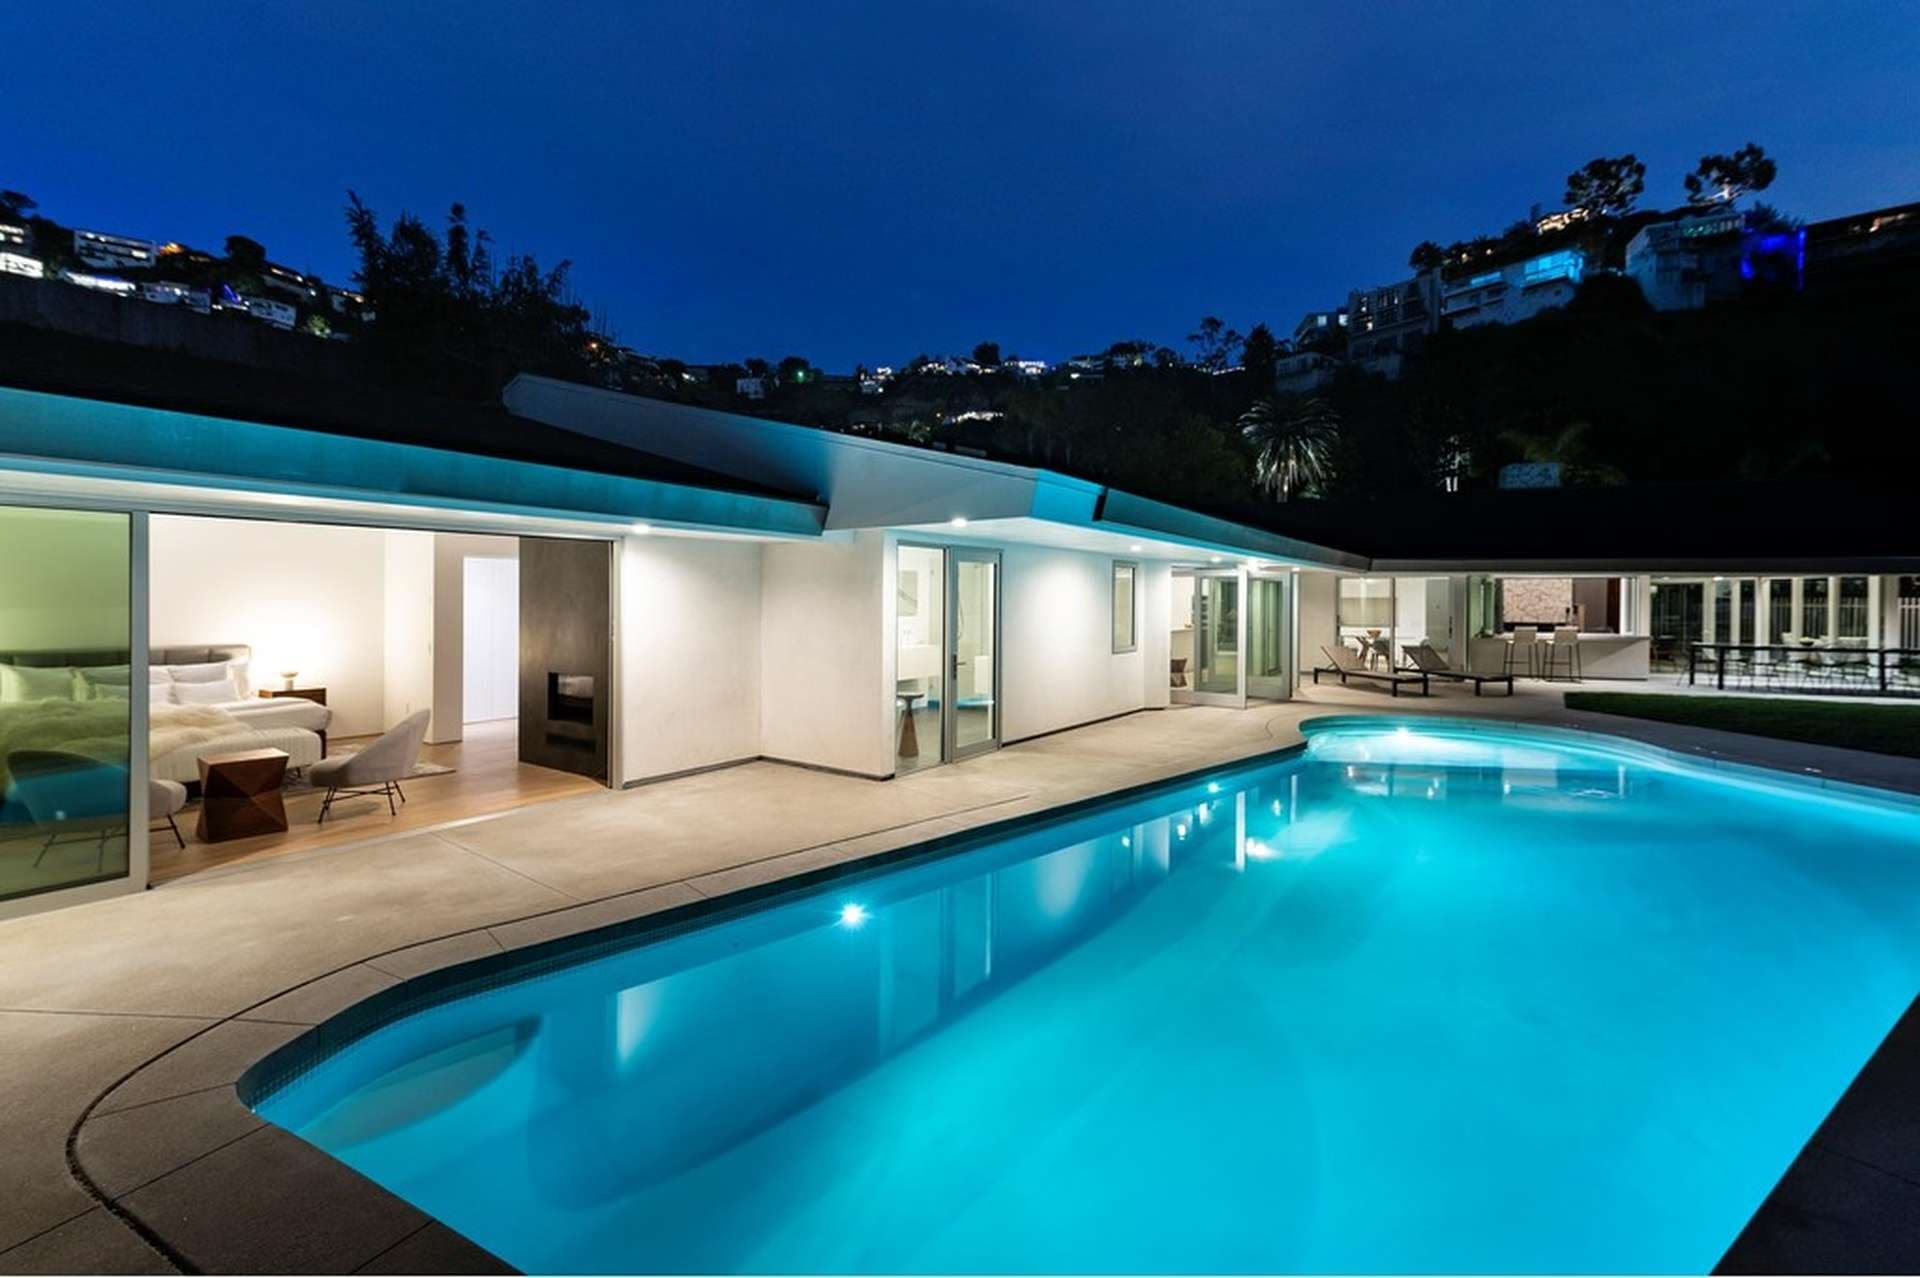 4 Bedroom Villa For Sale 1667 Rising Glen Road West Los Angeles Lp04088 1713468fff2af600.jpg